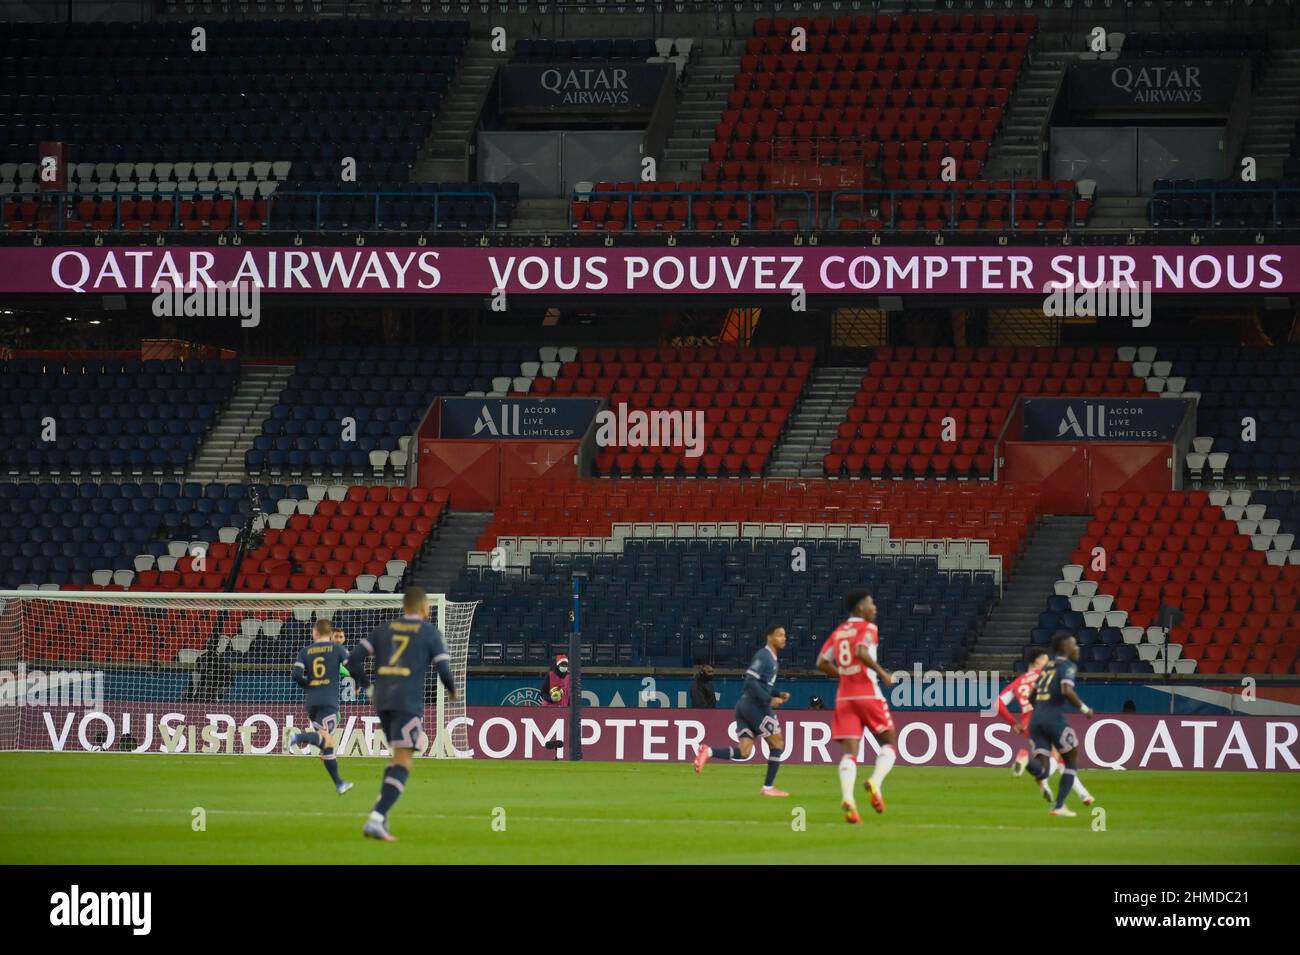 PSG - Monaco die Virage Auteuil ist aufgrund der Zweikampf-Aussetzung der Ultras während des Spiels zwischen PSG und AS Monaco am komplett leer Stockfoto